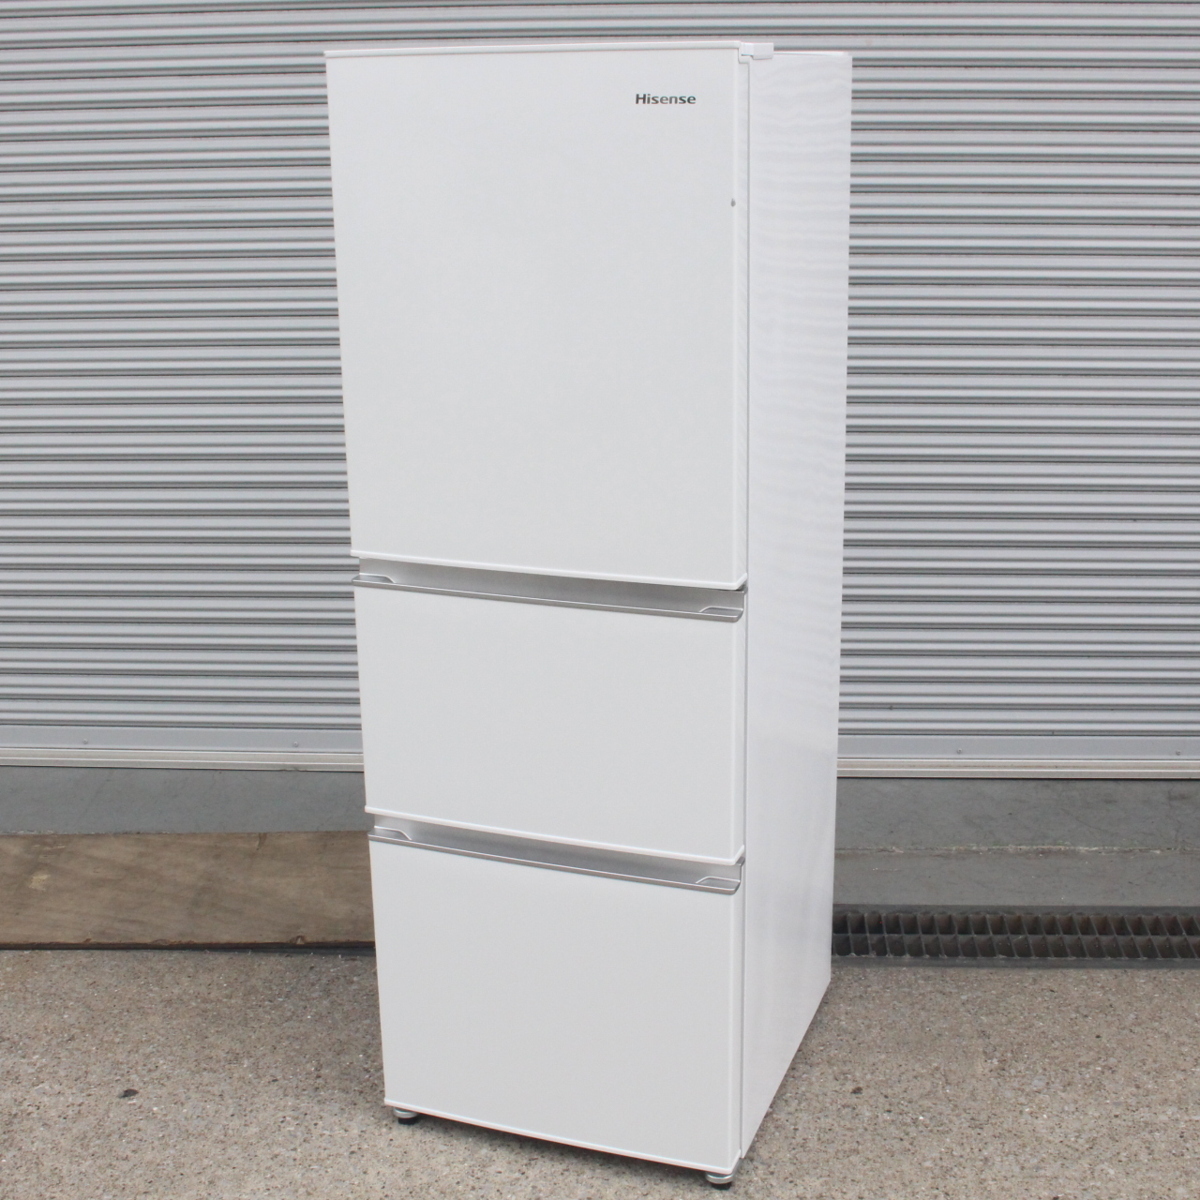 川崎市多摩区にて ハイセンス ノンフロン冷凍冷蔵庫 HR-D2801 2020年製 を出張買取させて頂きました。